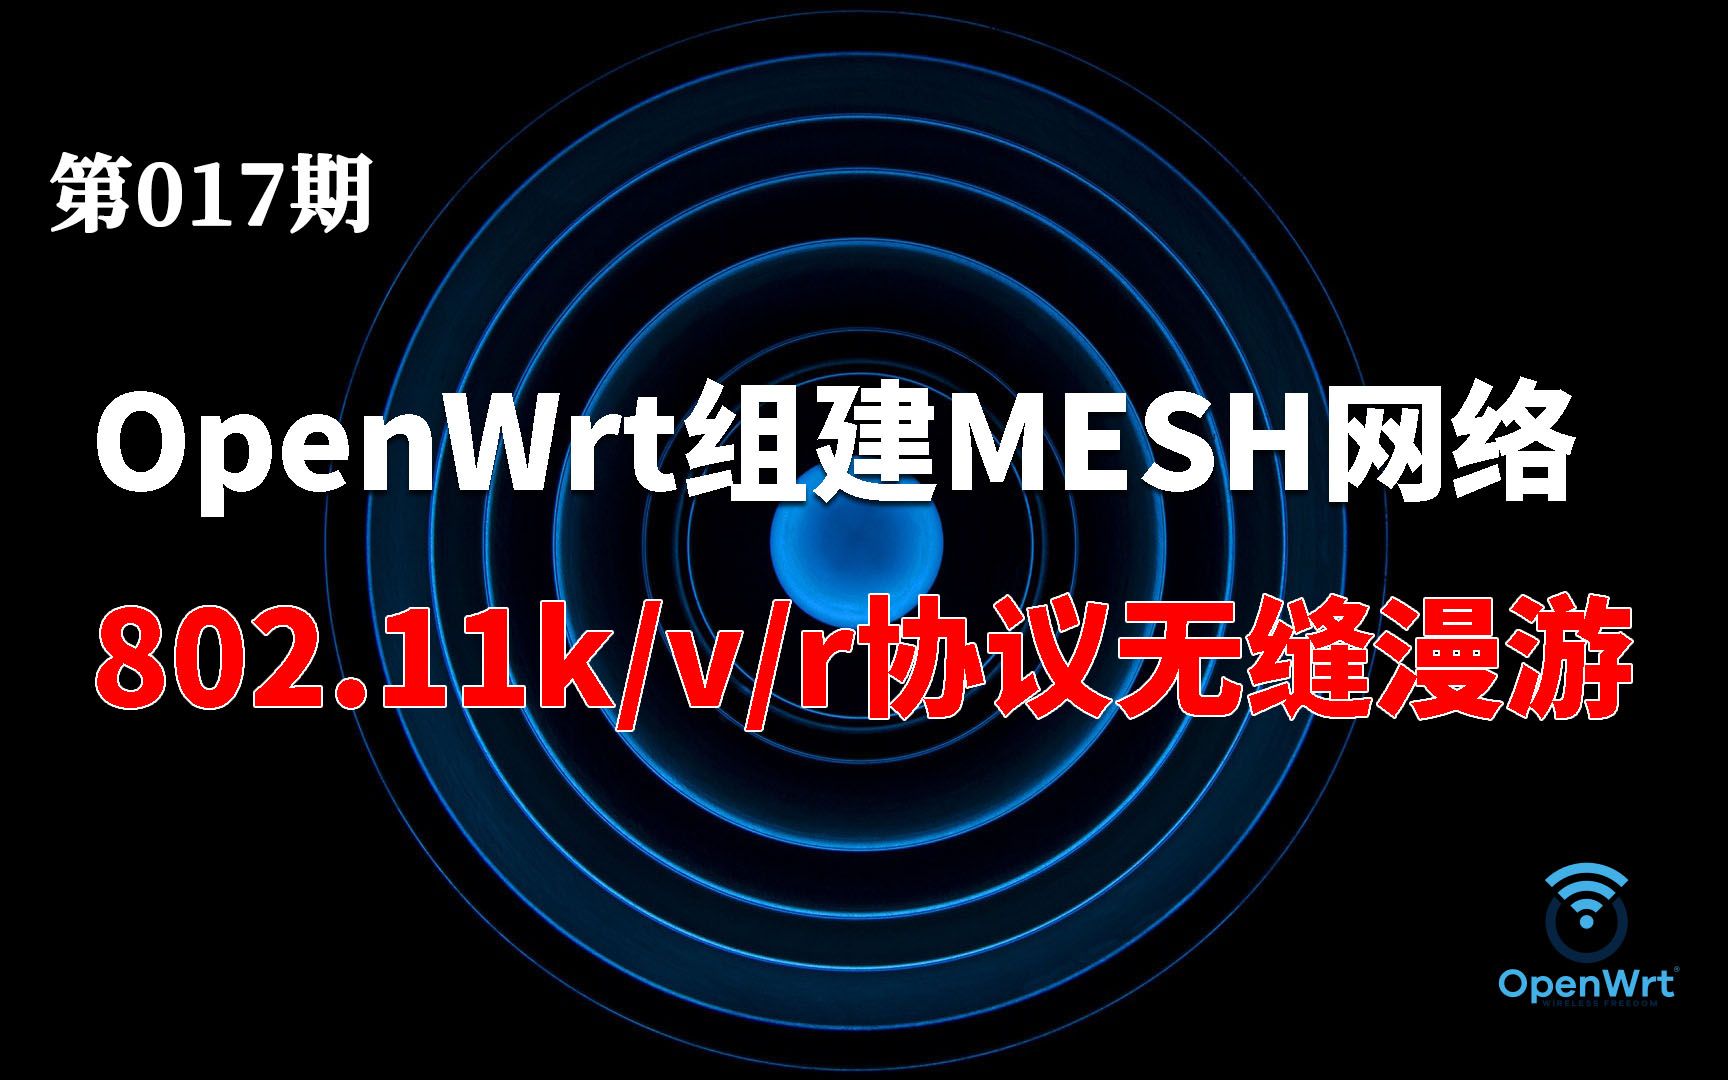 【萌新入门】OpenWrt开启802.11k/v/r协议配置快速漫游 媲美mesh路由器组网效果